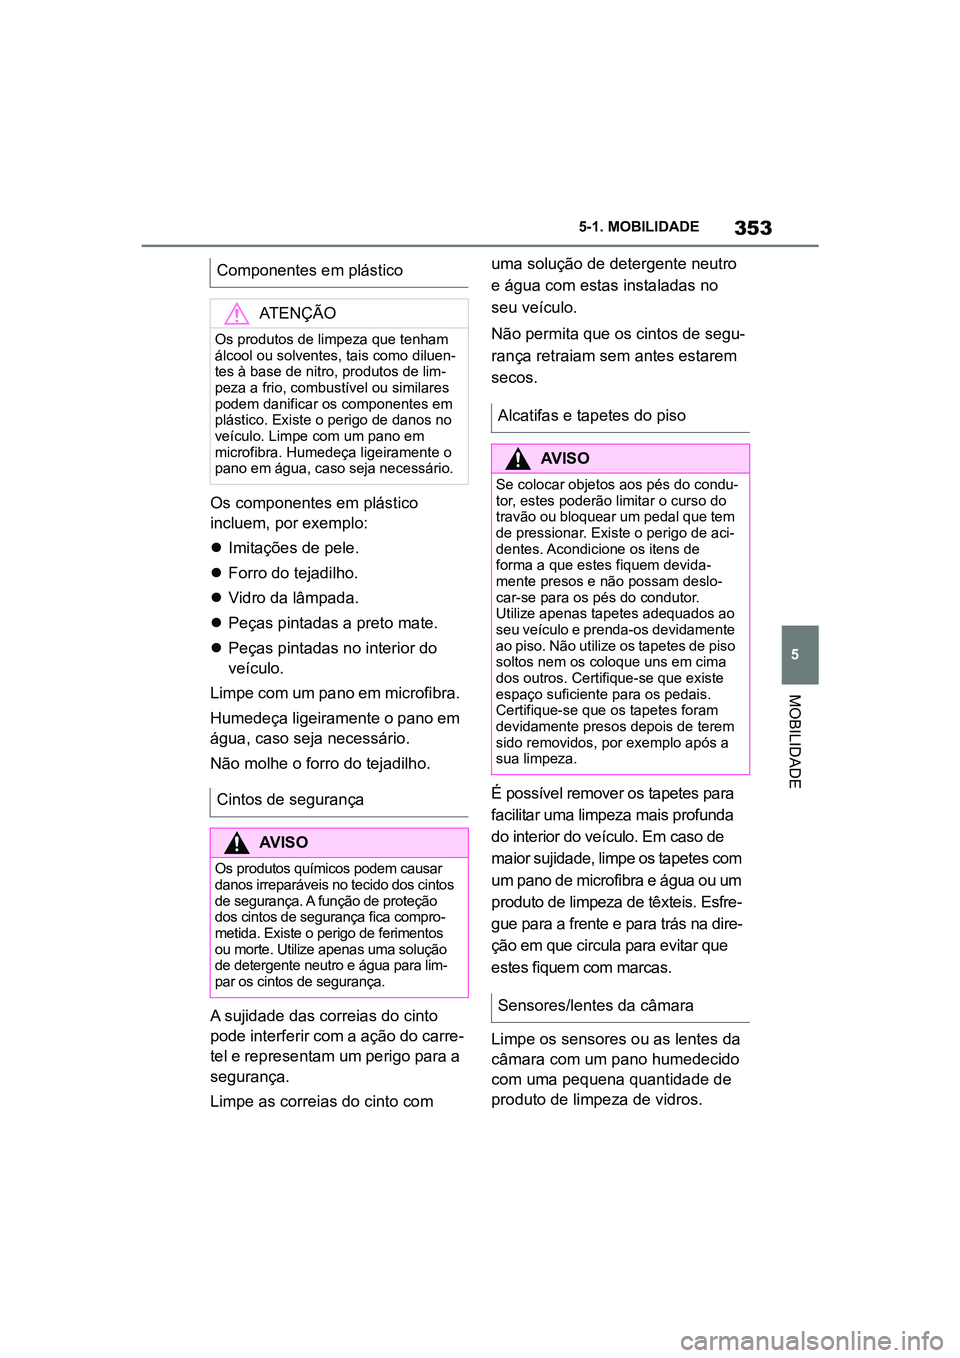 TOYOTA SUPRA 2019  Manual de utilização (in Portuguese) 353
5
Supra Owner's Manual 5-1. MOBILIDADE
MOBILIDADE
Os componentes em plástico 
incluem, por exemplo:

Imitações de pele.
 Forro do tejadilho.
 Vidro da lâmpada.
 Peças pintadas